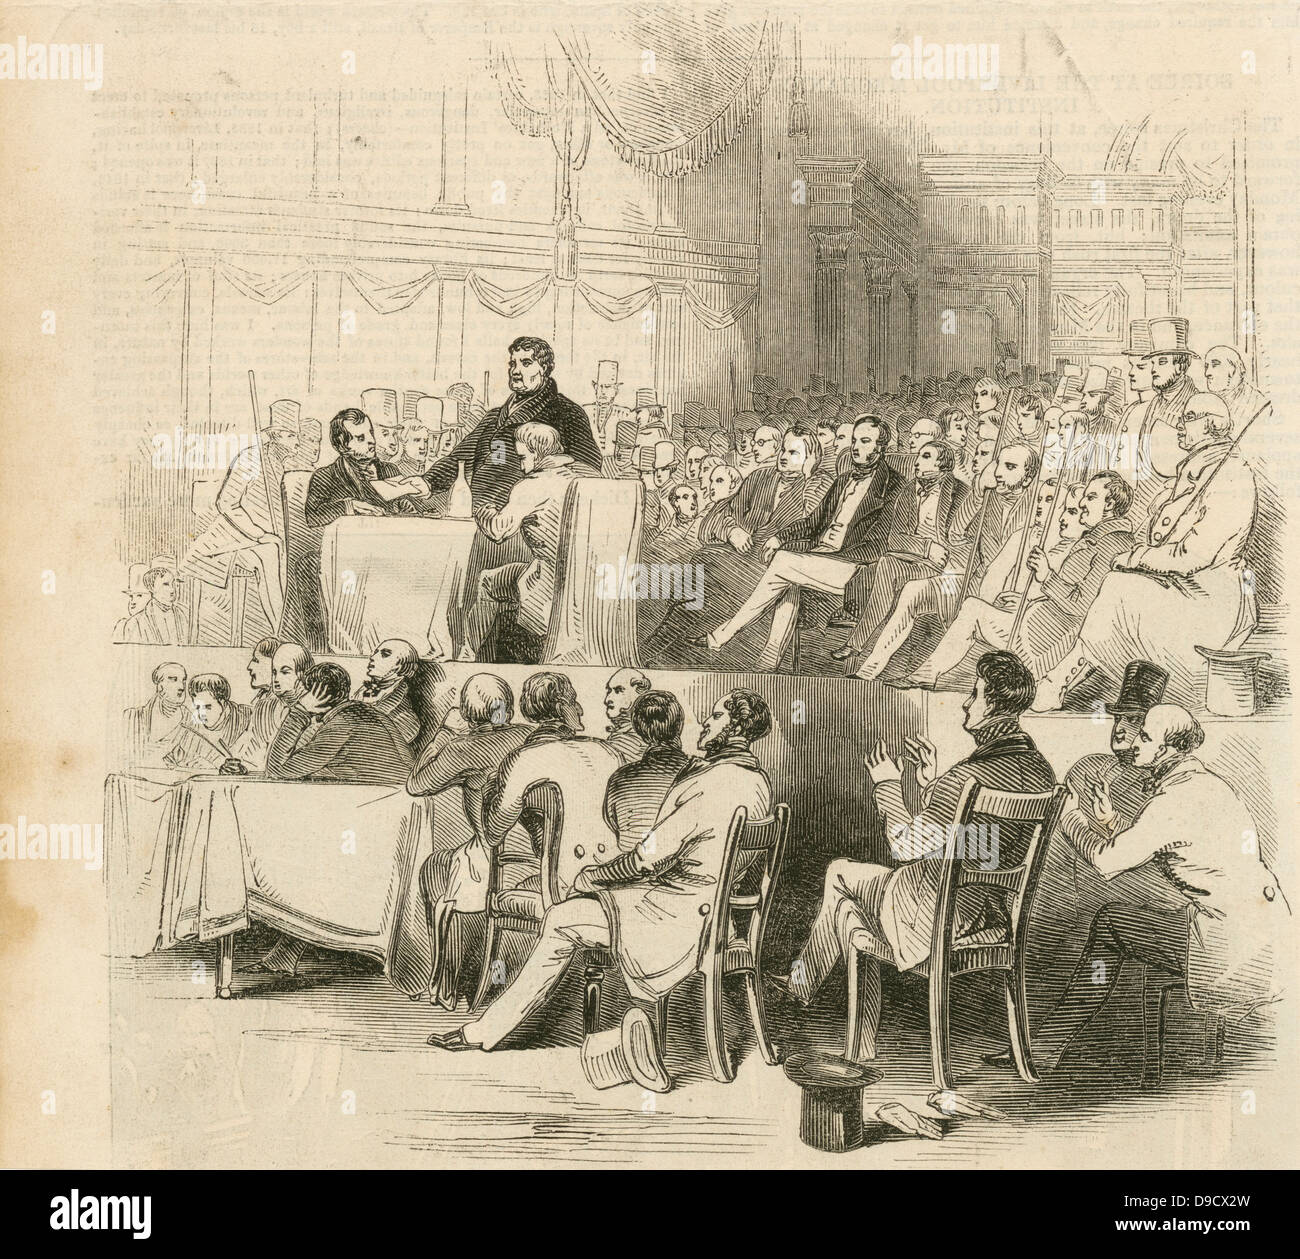 Daniel OConnor (1775-1847) le libérateur, leader politique irlandais, aborder une réunion sur le droit de maïs à Covent Garden Theatre, 1844. Il a fait campagne pour le droit des catholiques de siéger au Parlement de Westminster. Banque D'Images